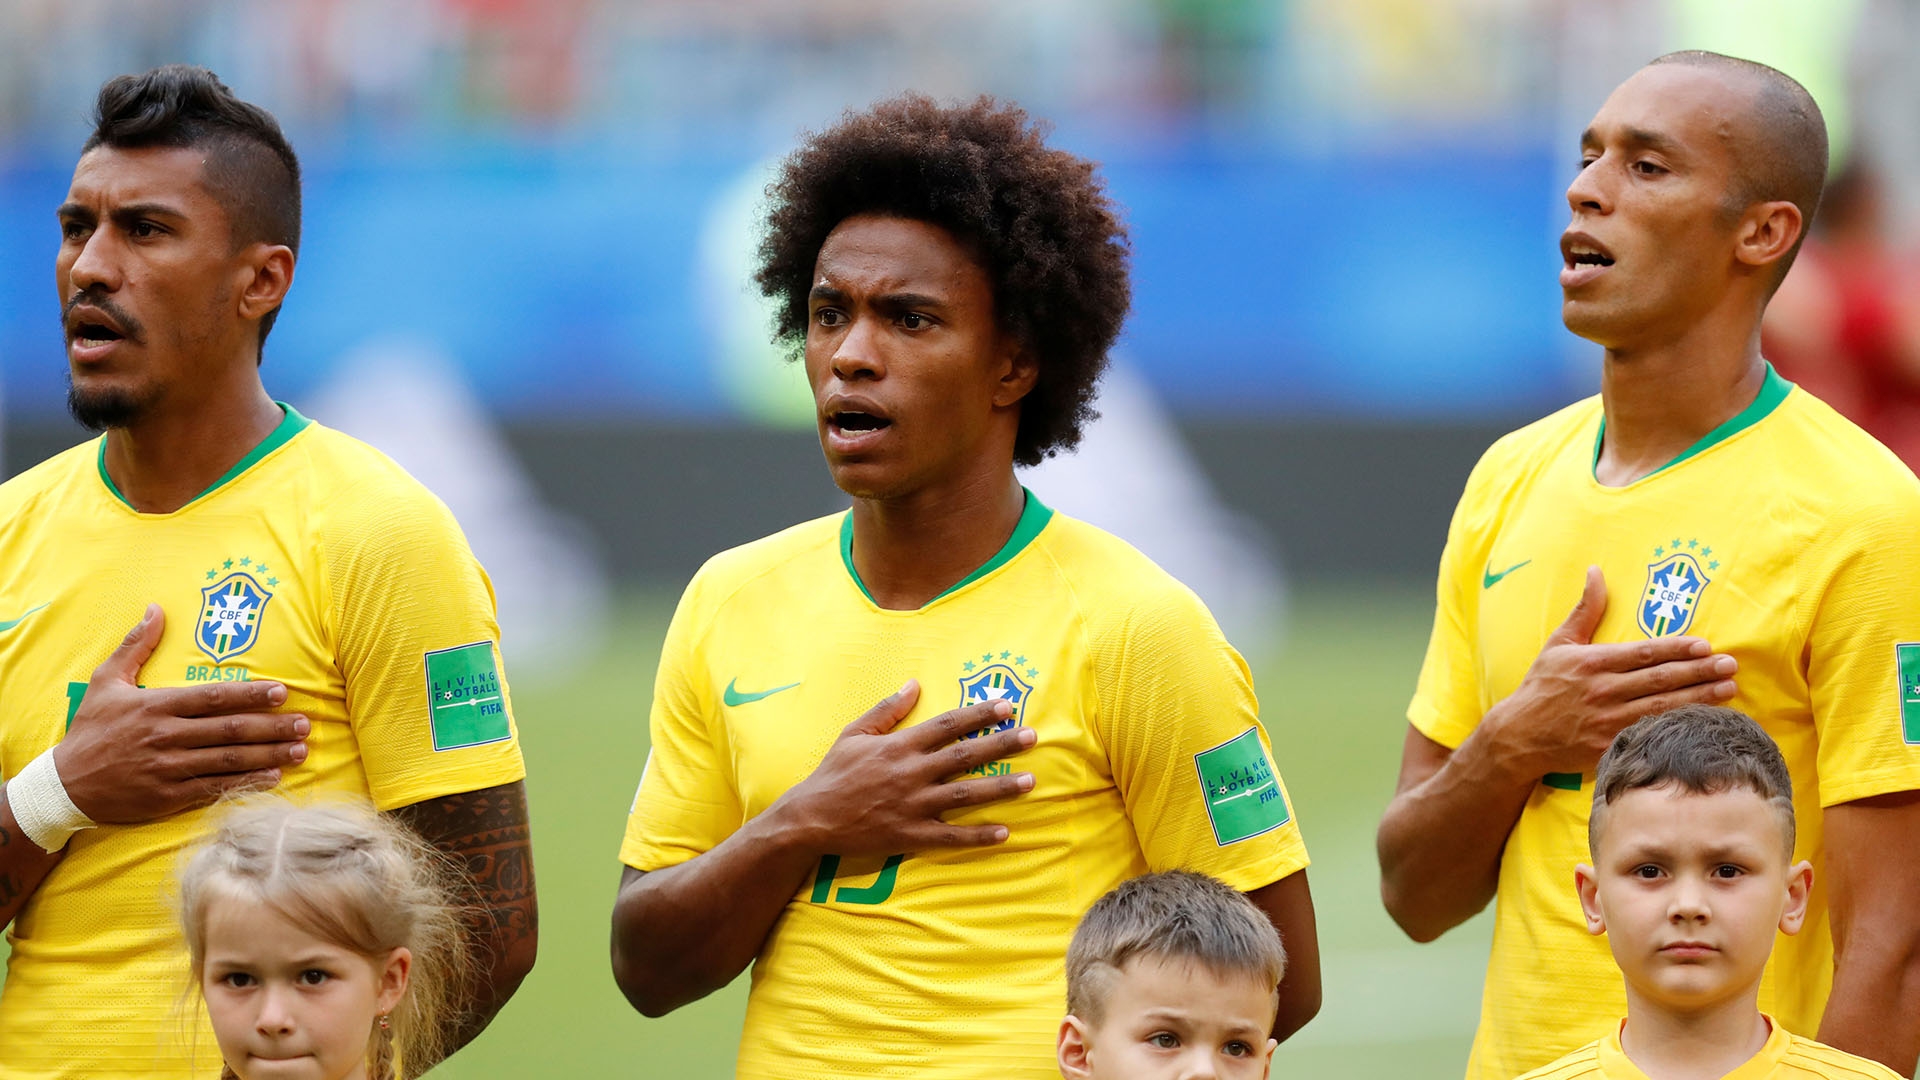 La profunda reflexión de un ex jugador de la selección de Brasil: “No quiero volver al país nunca más”